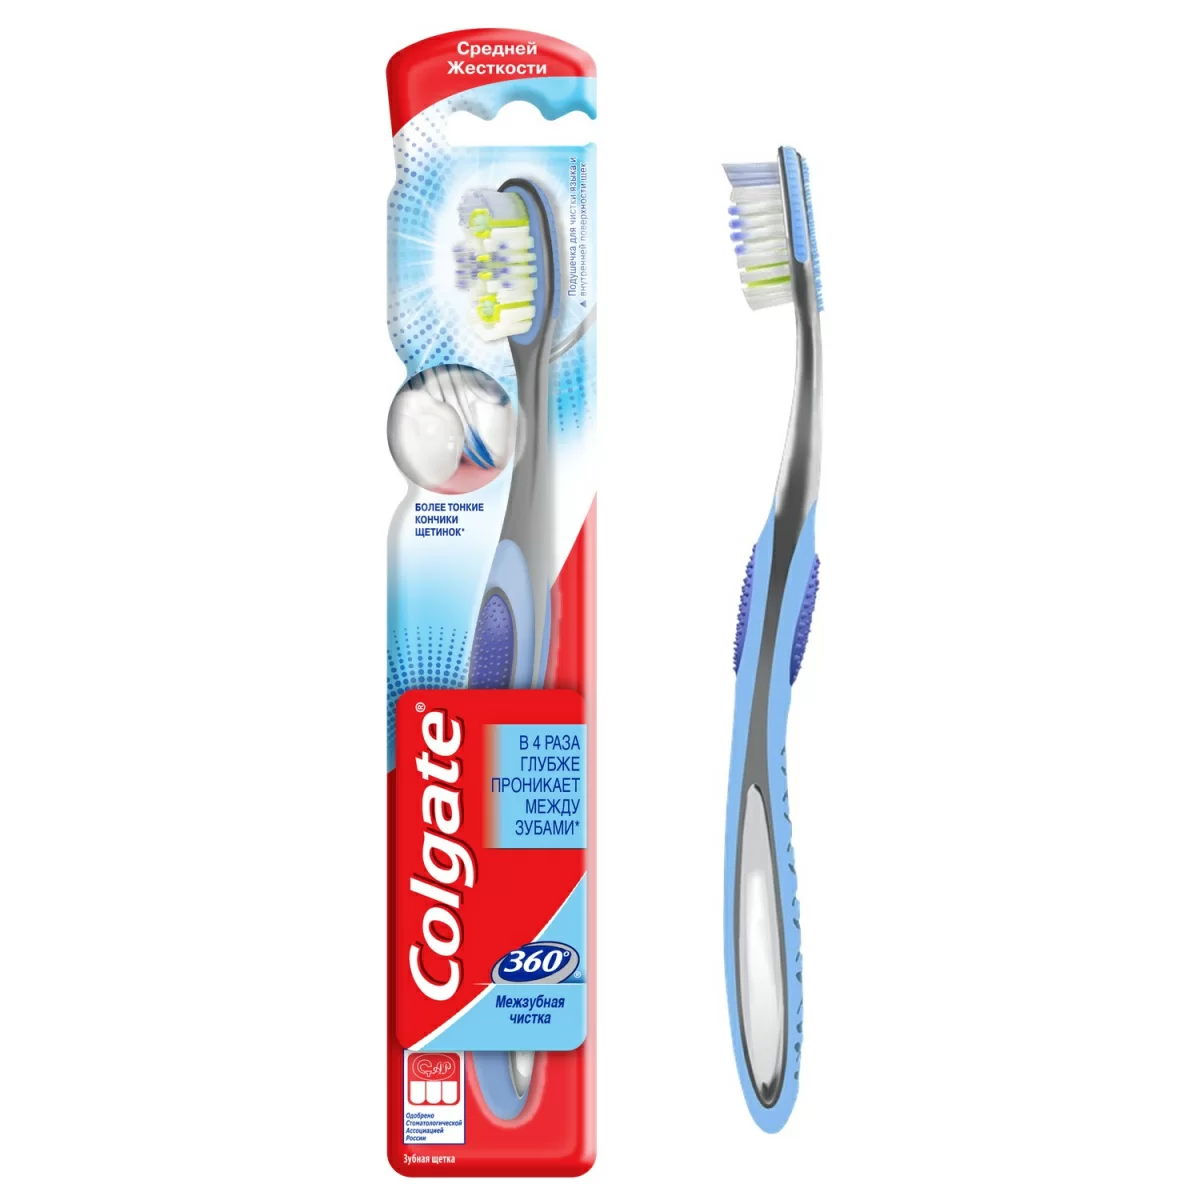 Зубная щетка Colgate 360 межзубная чистка средняя